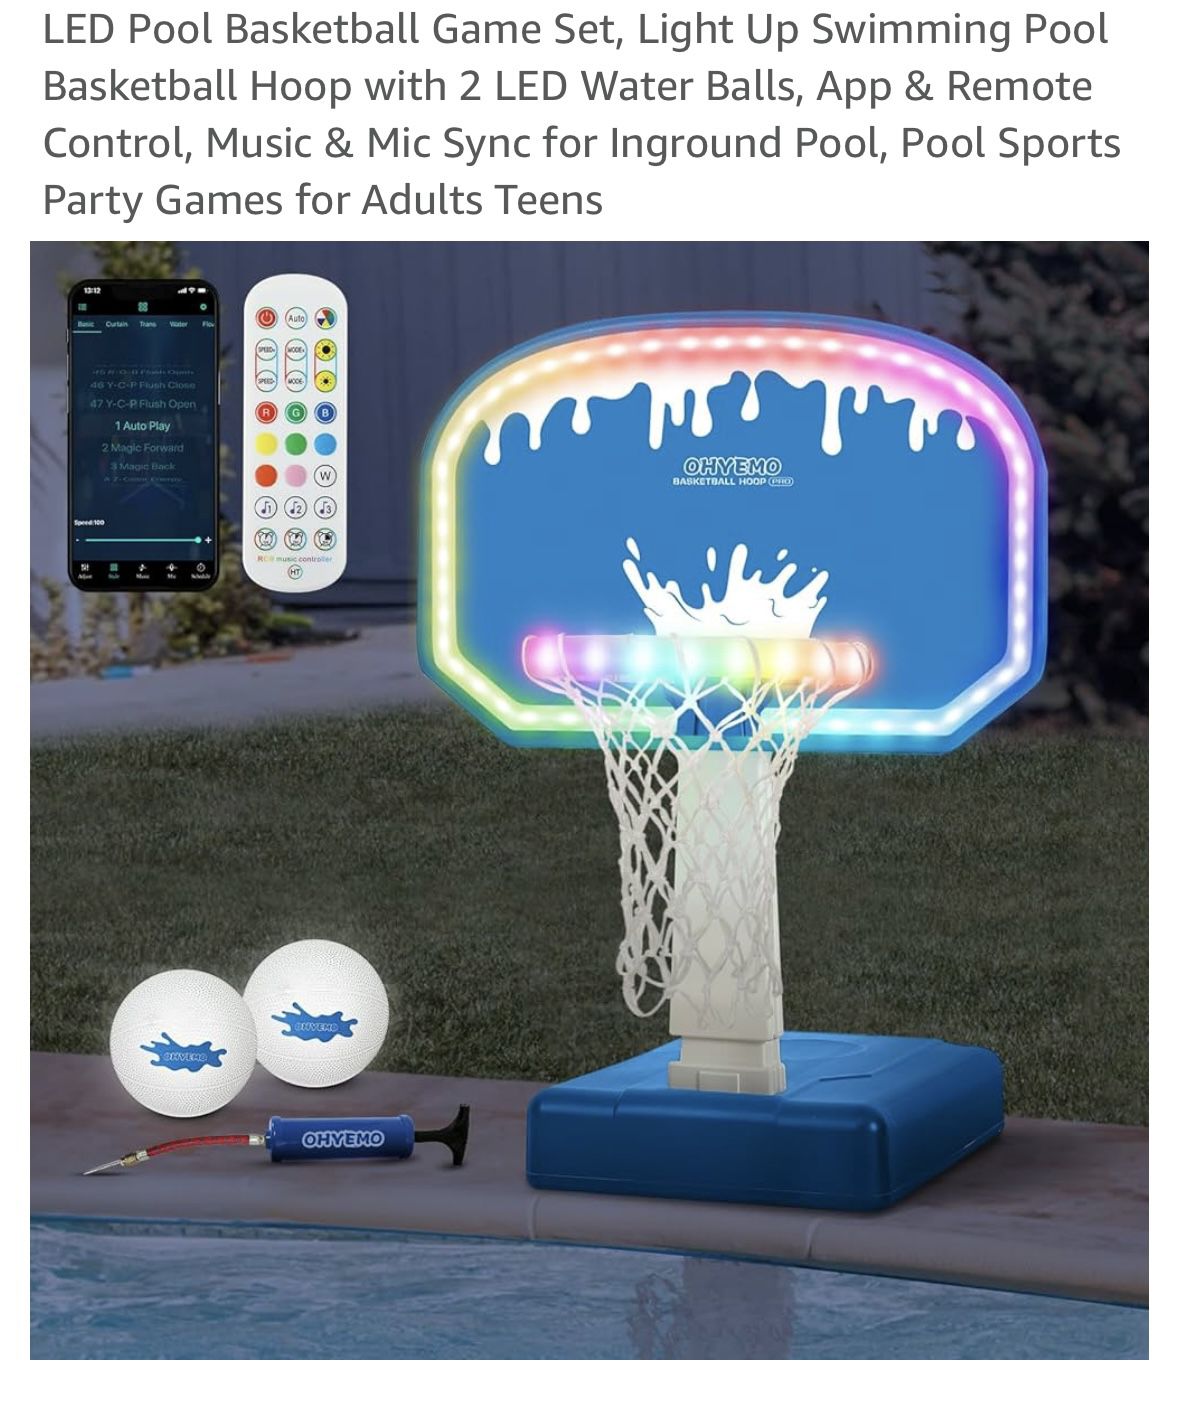 LED Pool Basketball Game Set